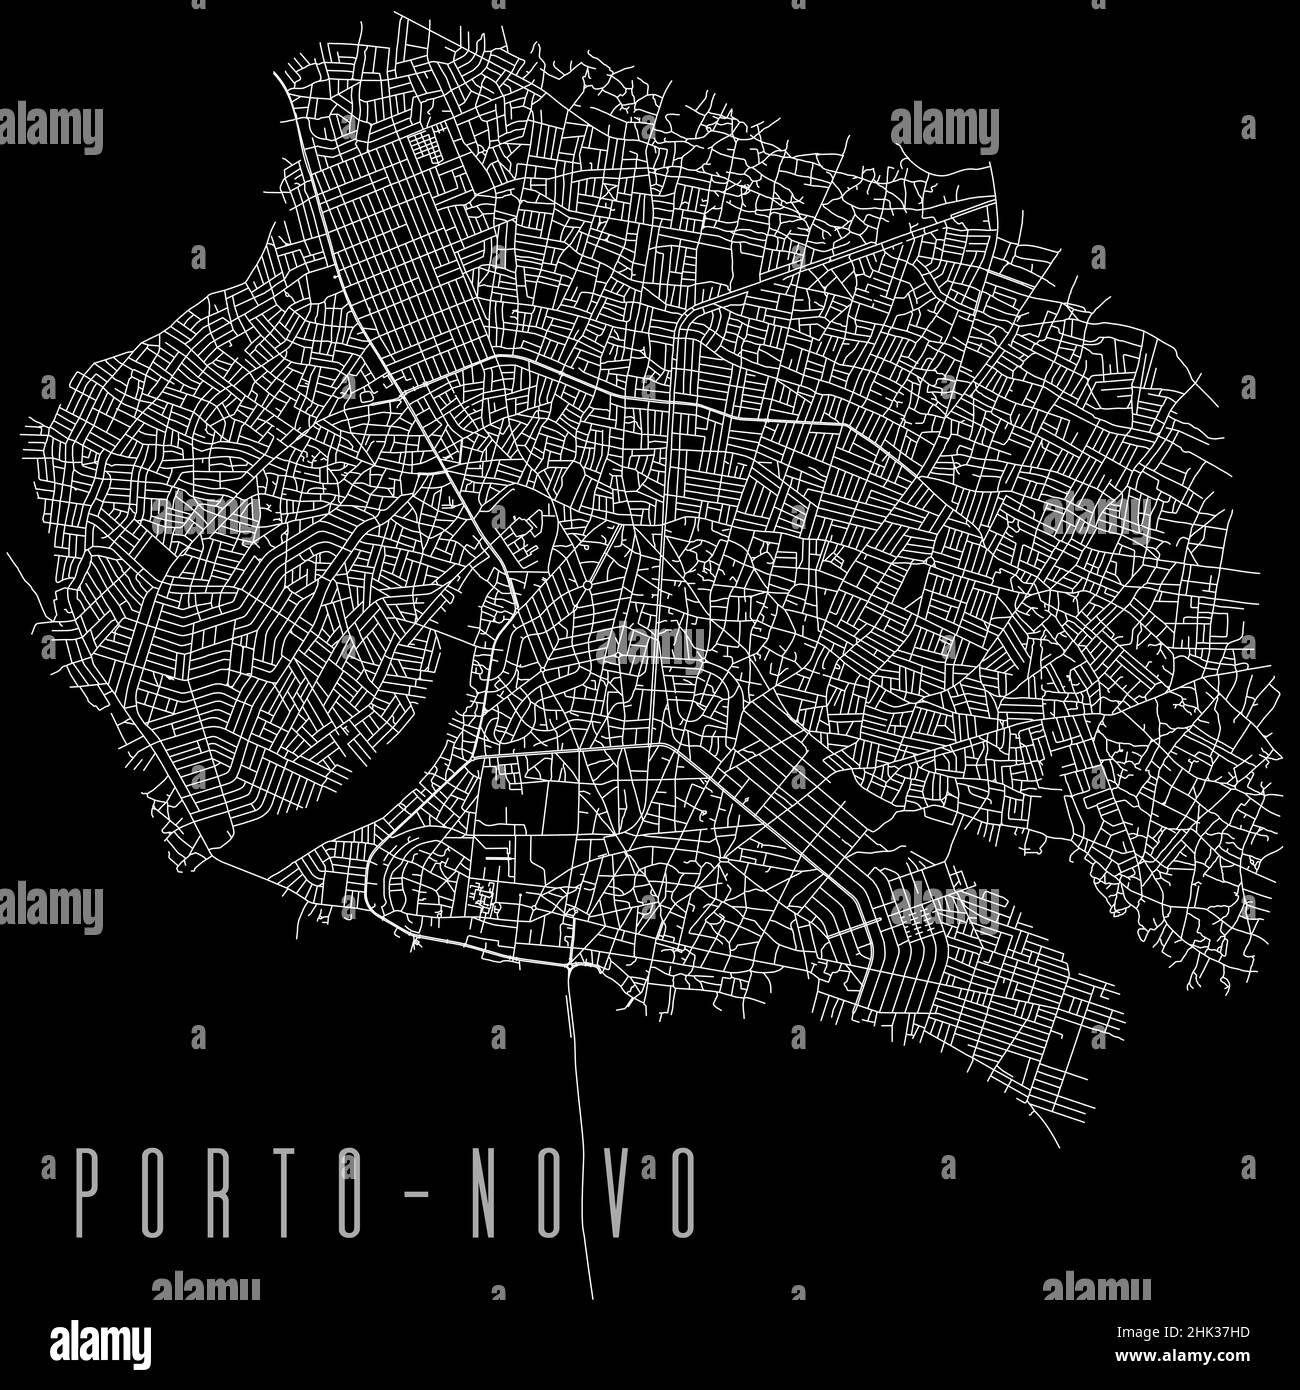 Porto-Novo Stadt Provinz Vektor Karte Poster. Hauptstadt von Benin Gemeinde quadratische lineare Straßenkarte, administratives Gemeindegebiet, weiße Linien auf schwarz Stock Vektor